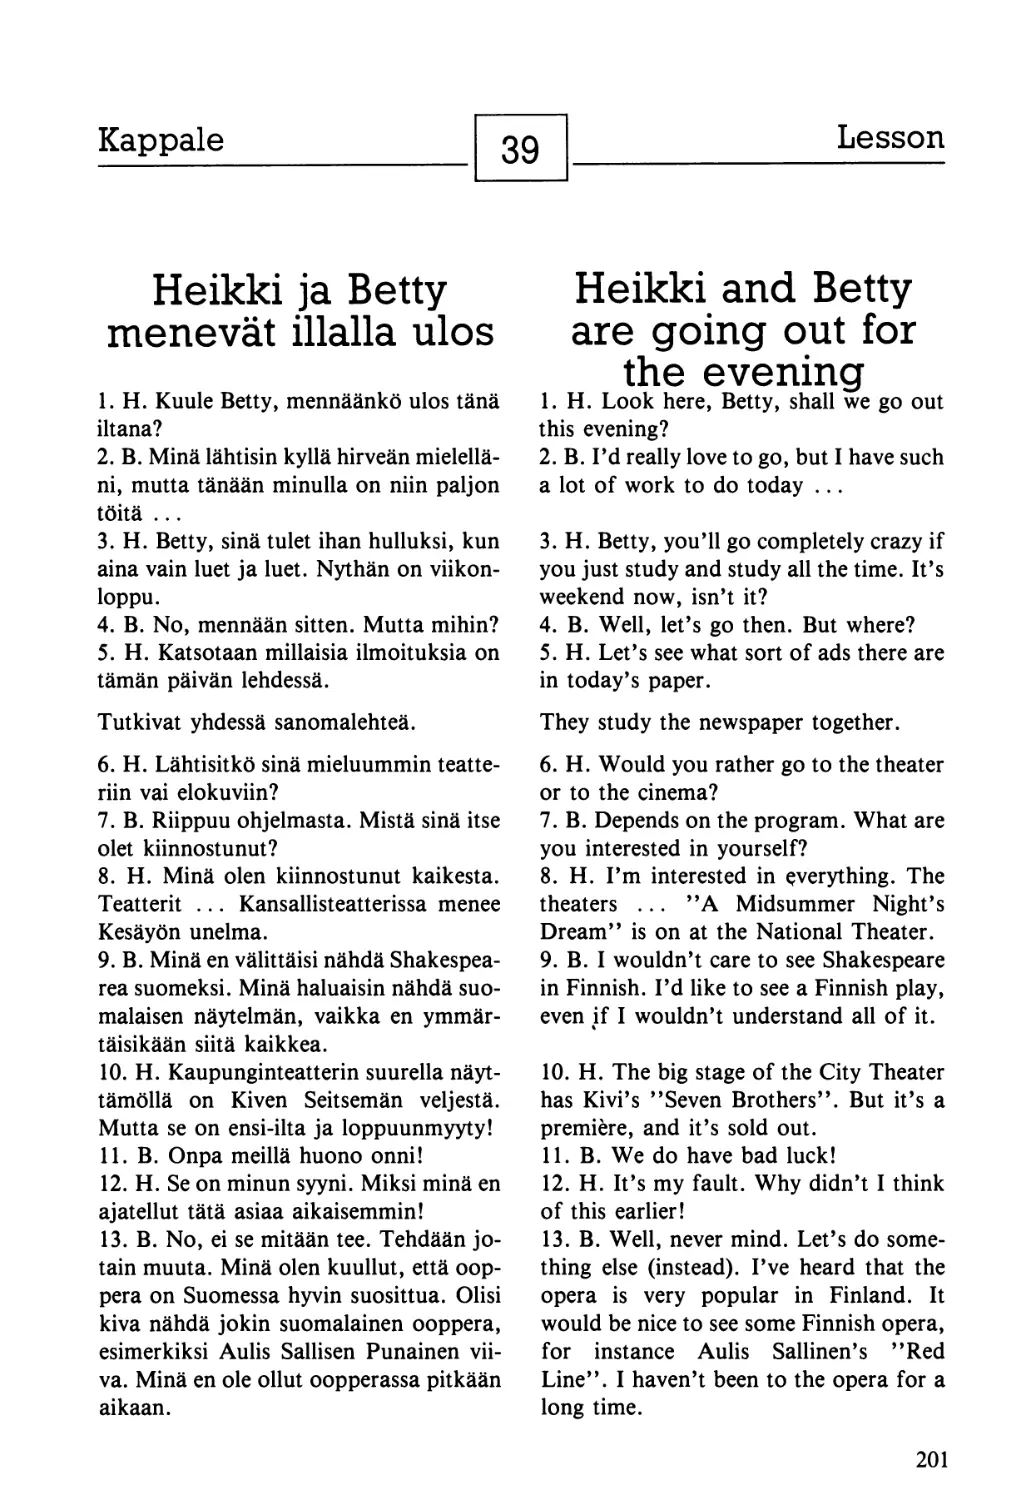 39. Heikki ja Betty menevät illalla ulos — Heikki and Betty are going out for the evening